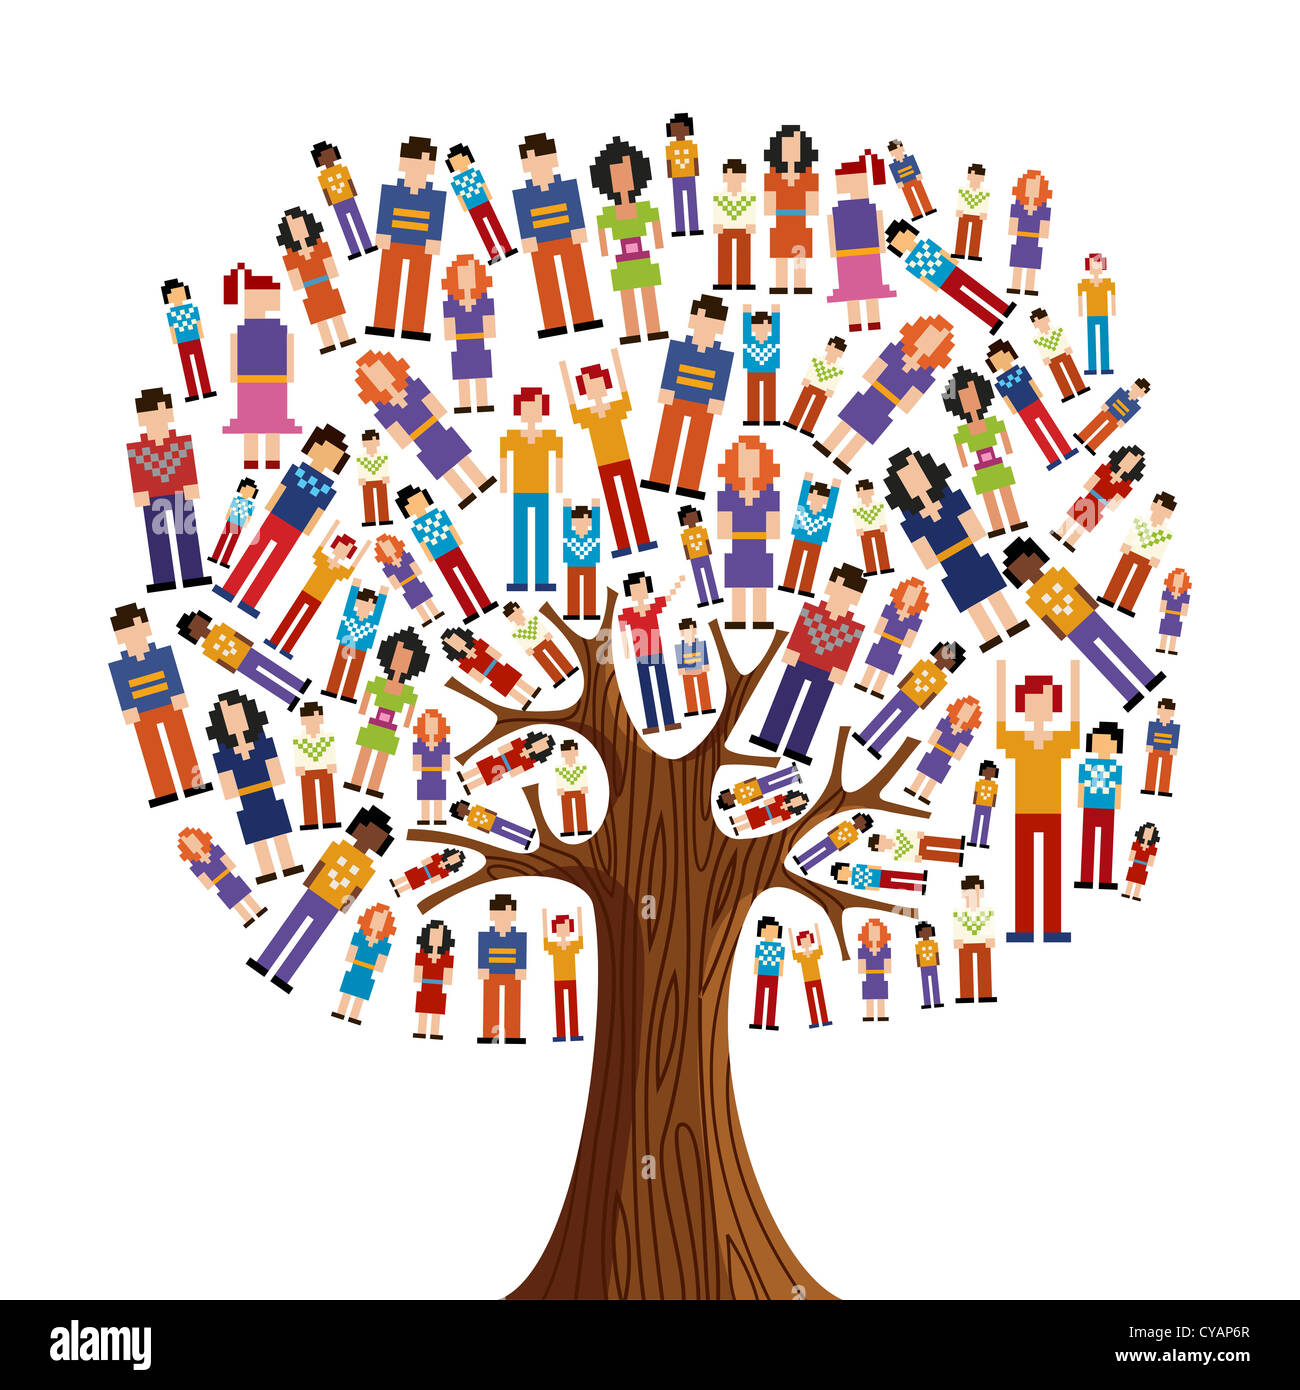 Isolierte Vielfalt Baum mit verpixelten Menschen Illustration. Vektor-Datei geschichtet für einfache Handhabung und individuelle Farbgebung. Stockfoto